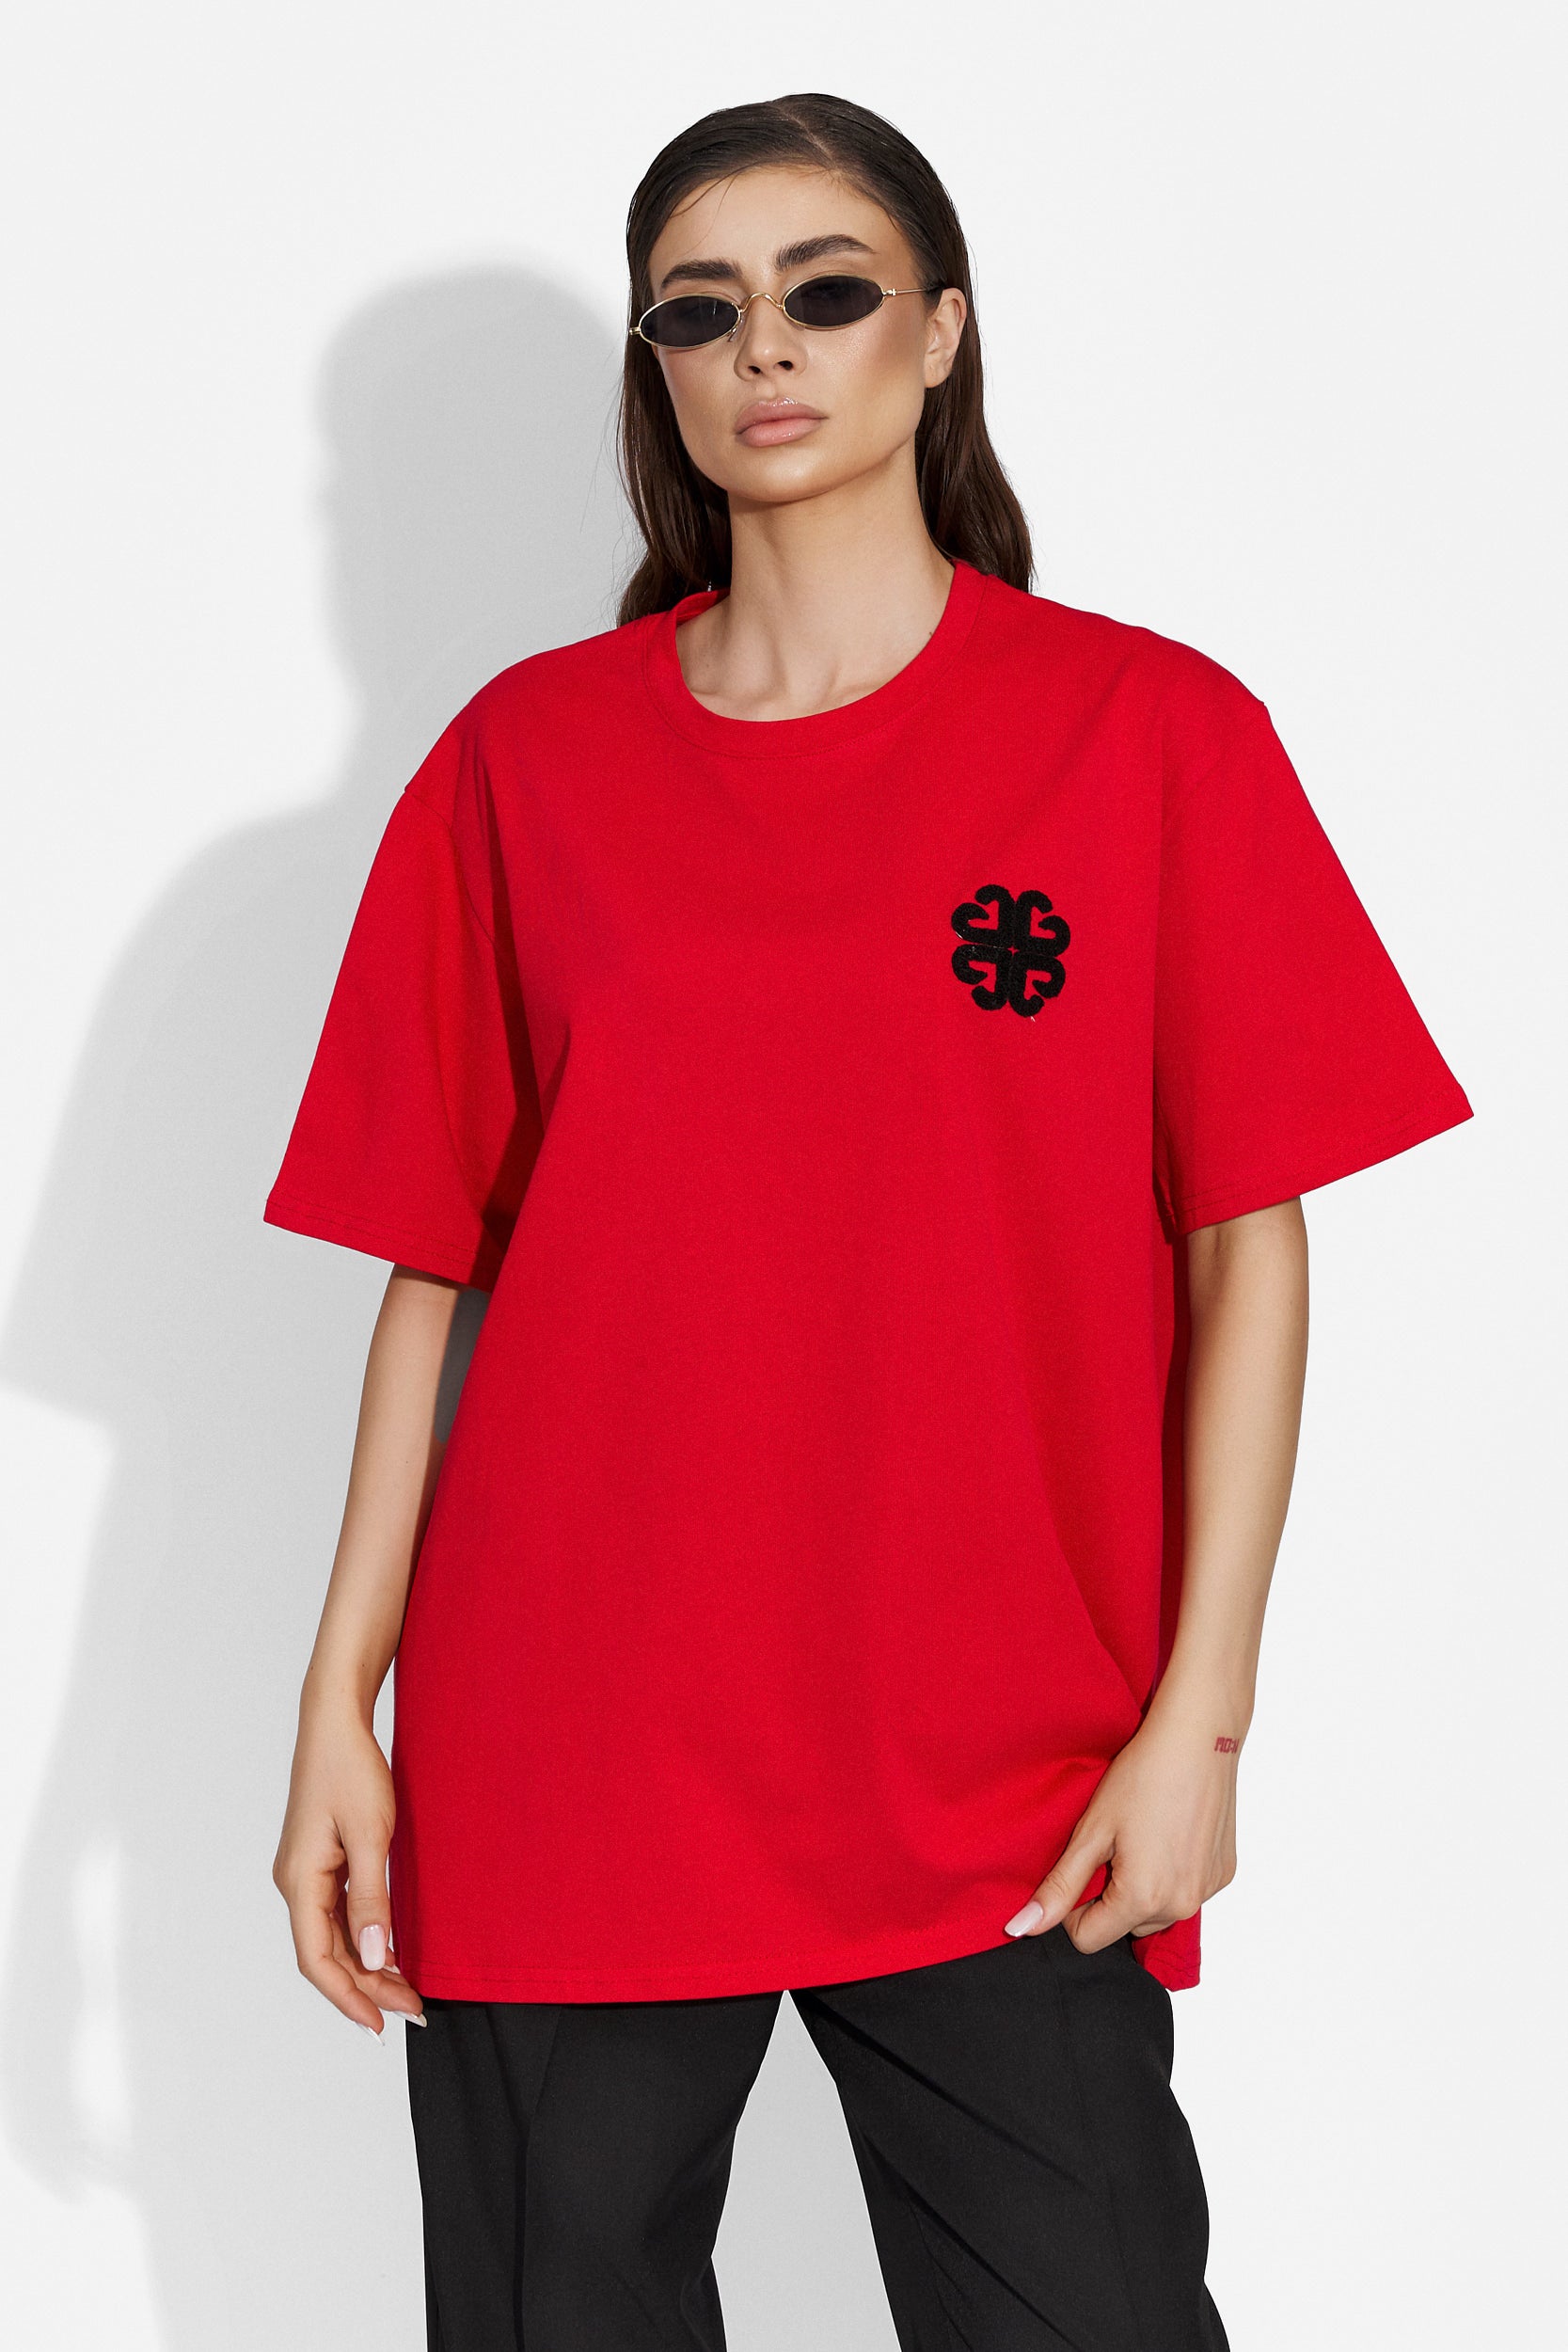 Forlany Bogas обикновена червена дамска тениска